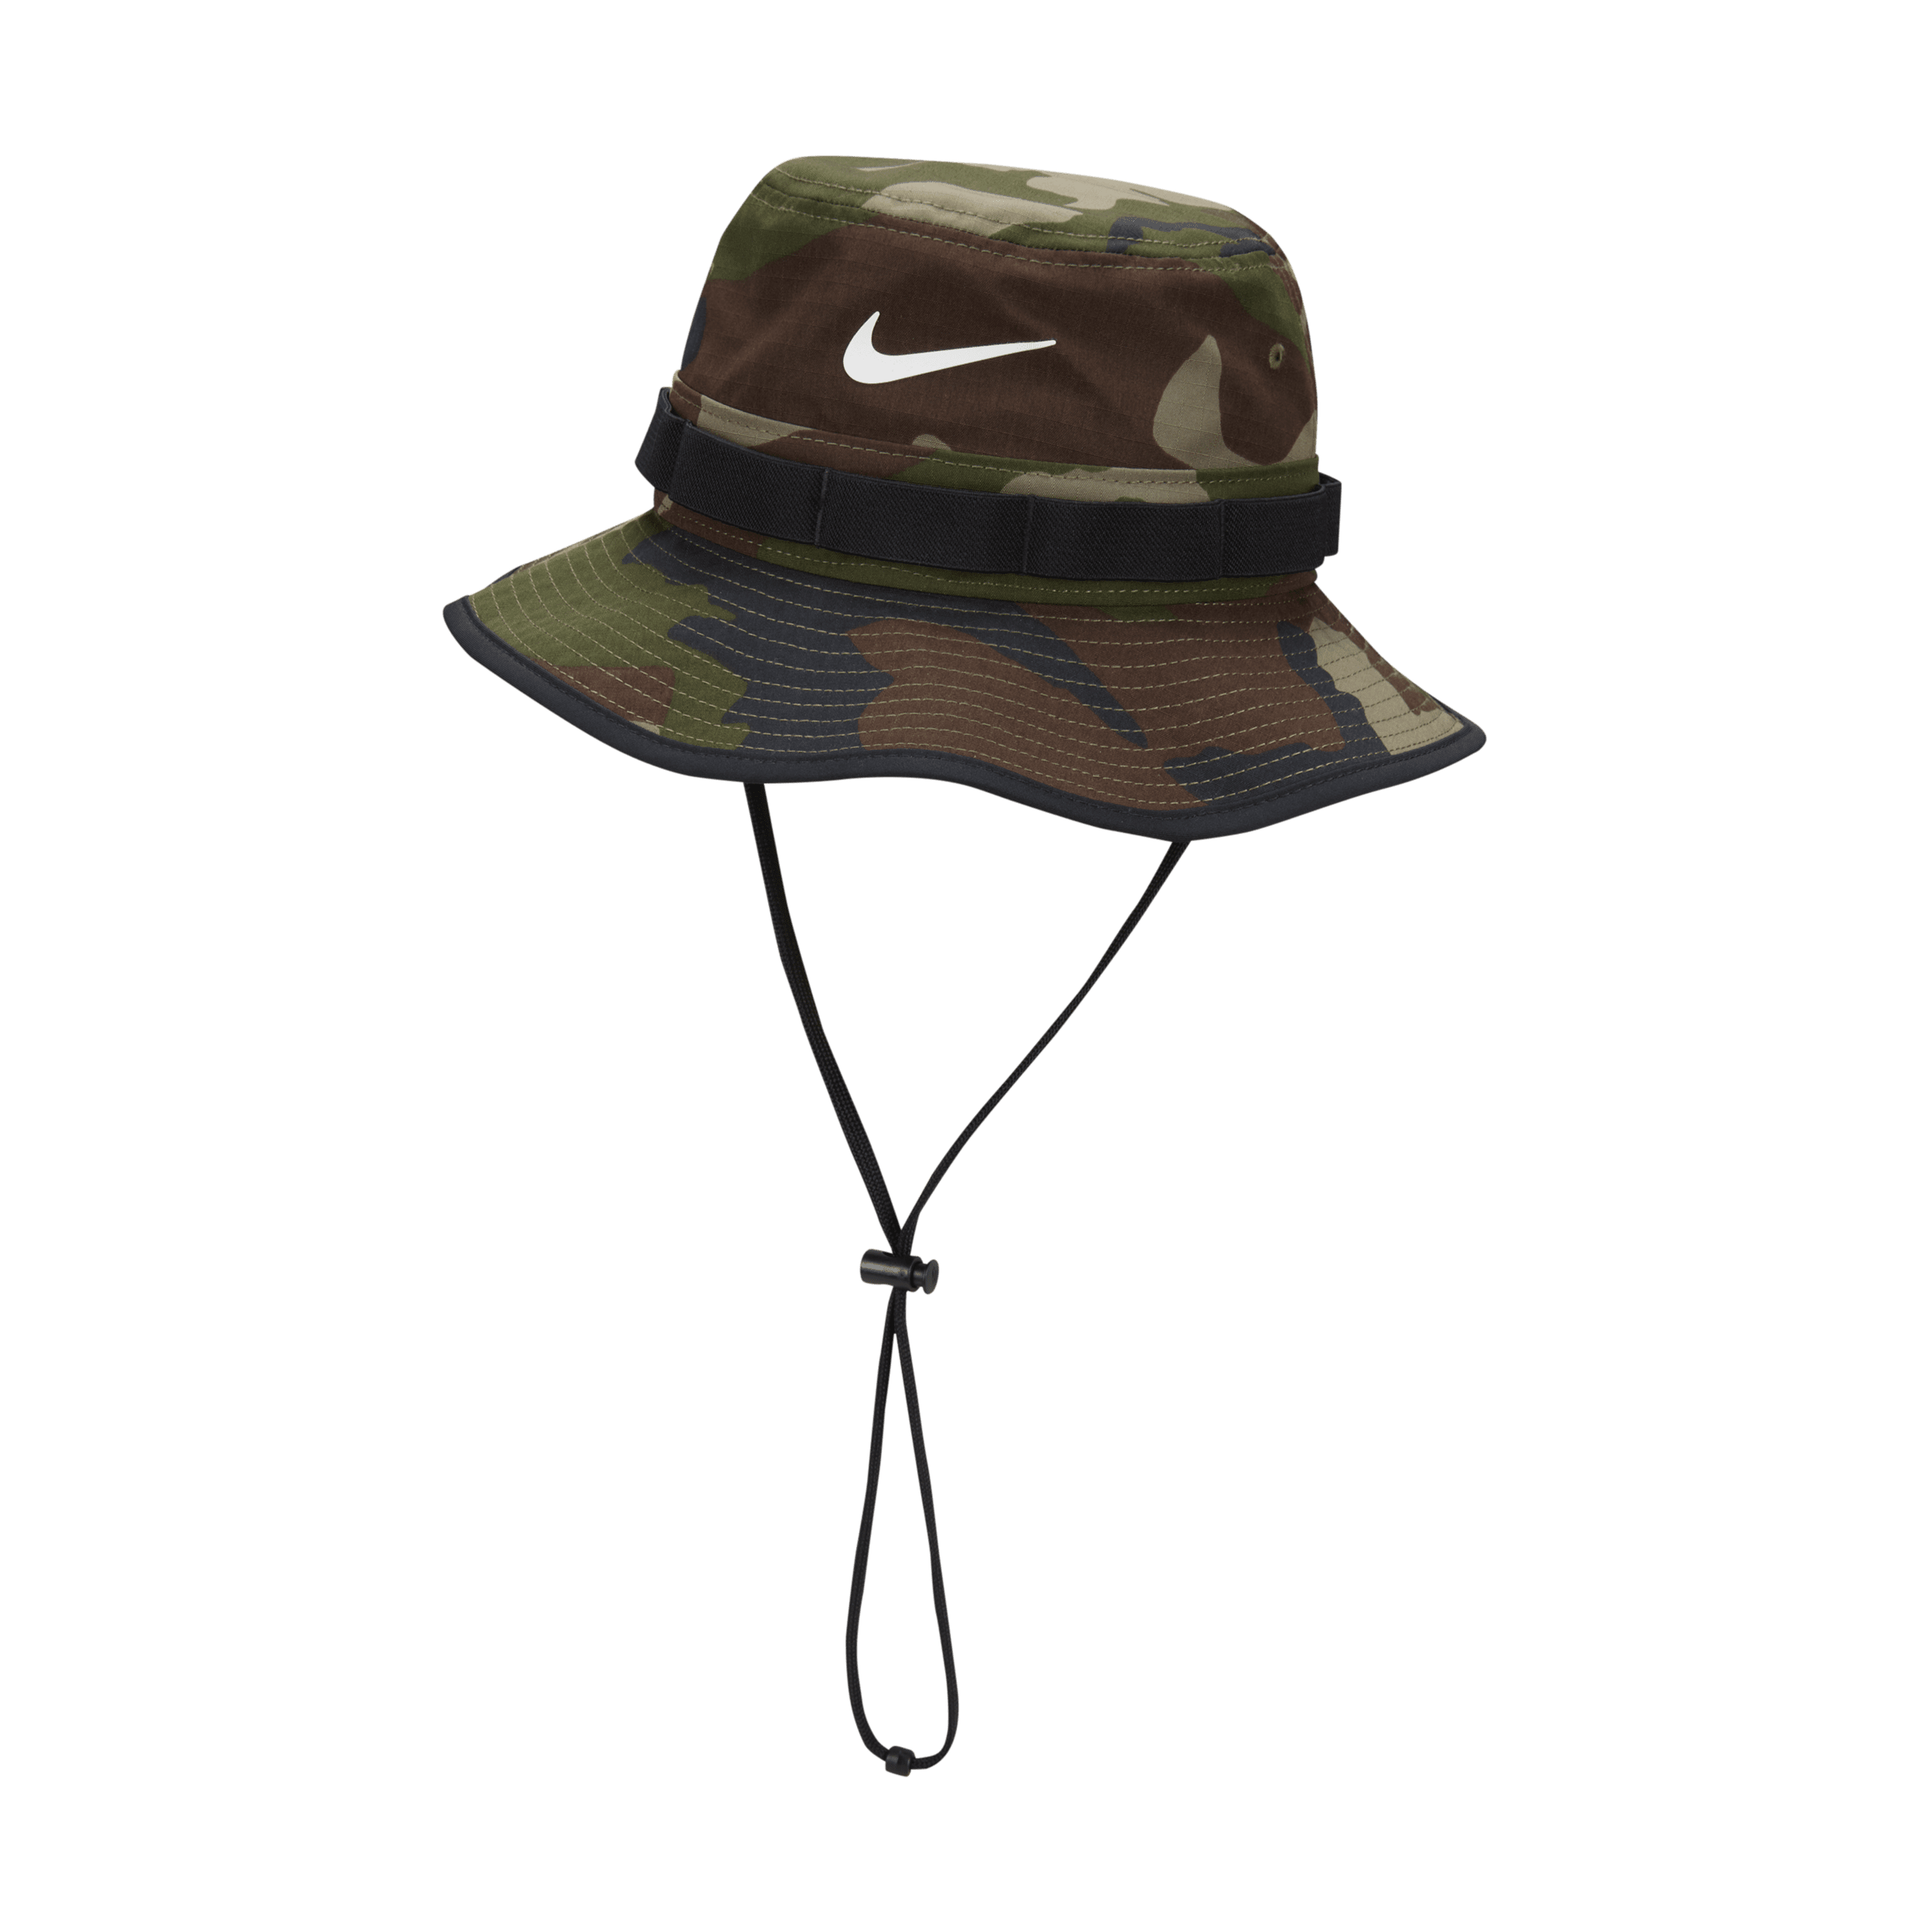 Nike Dri-FIT Apex vissershoedje met camouflageprint - Groen